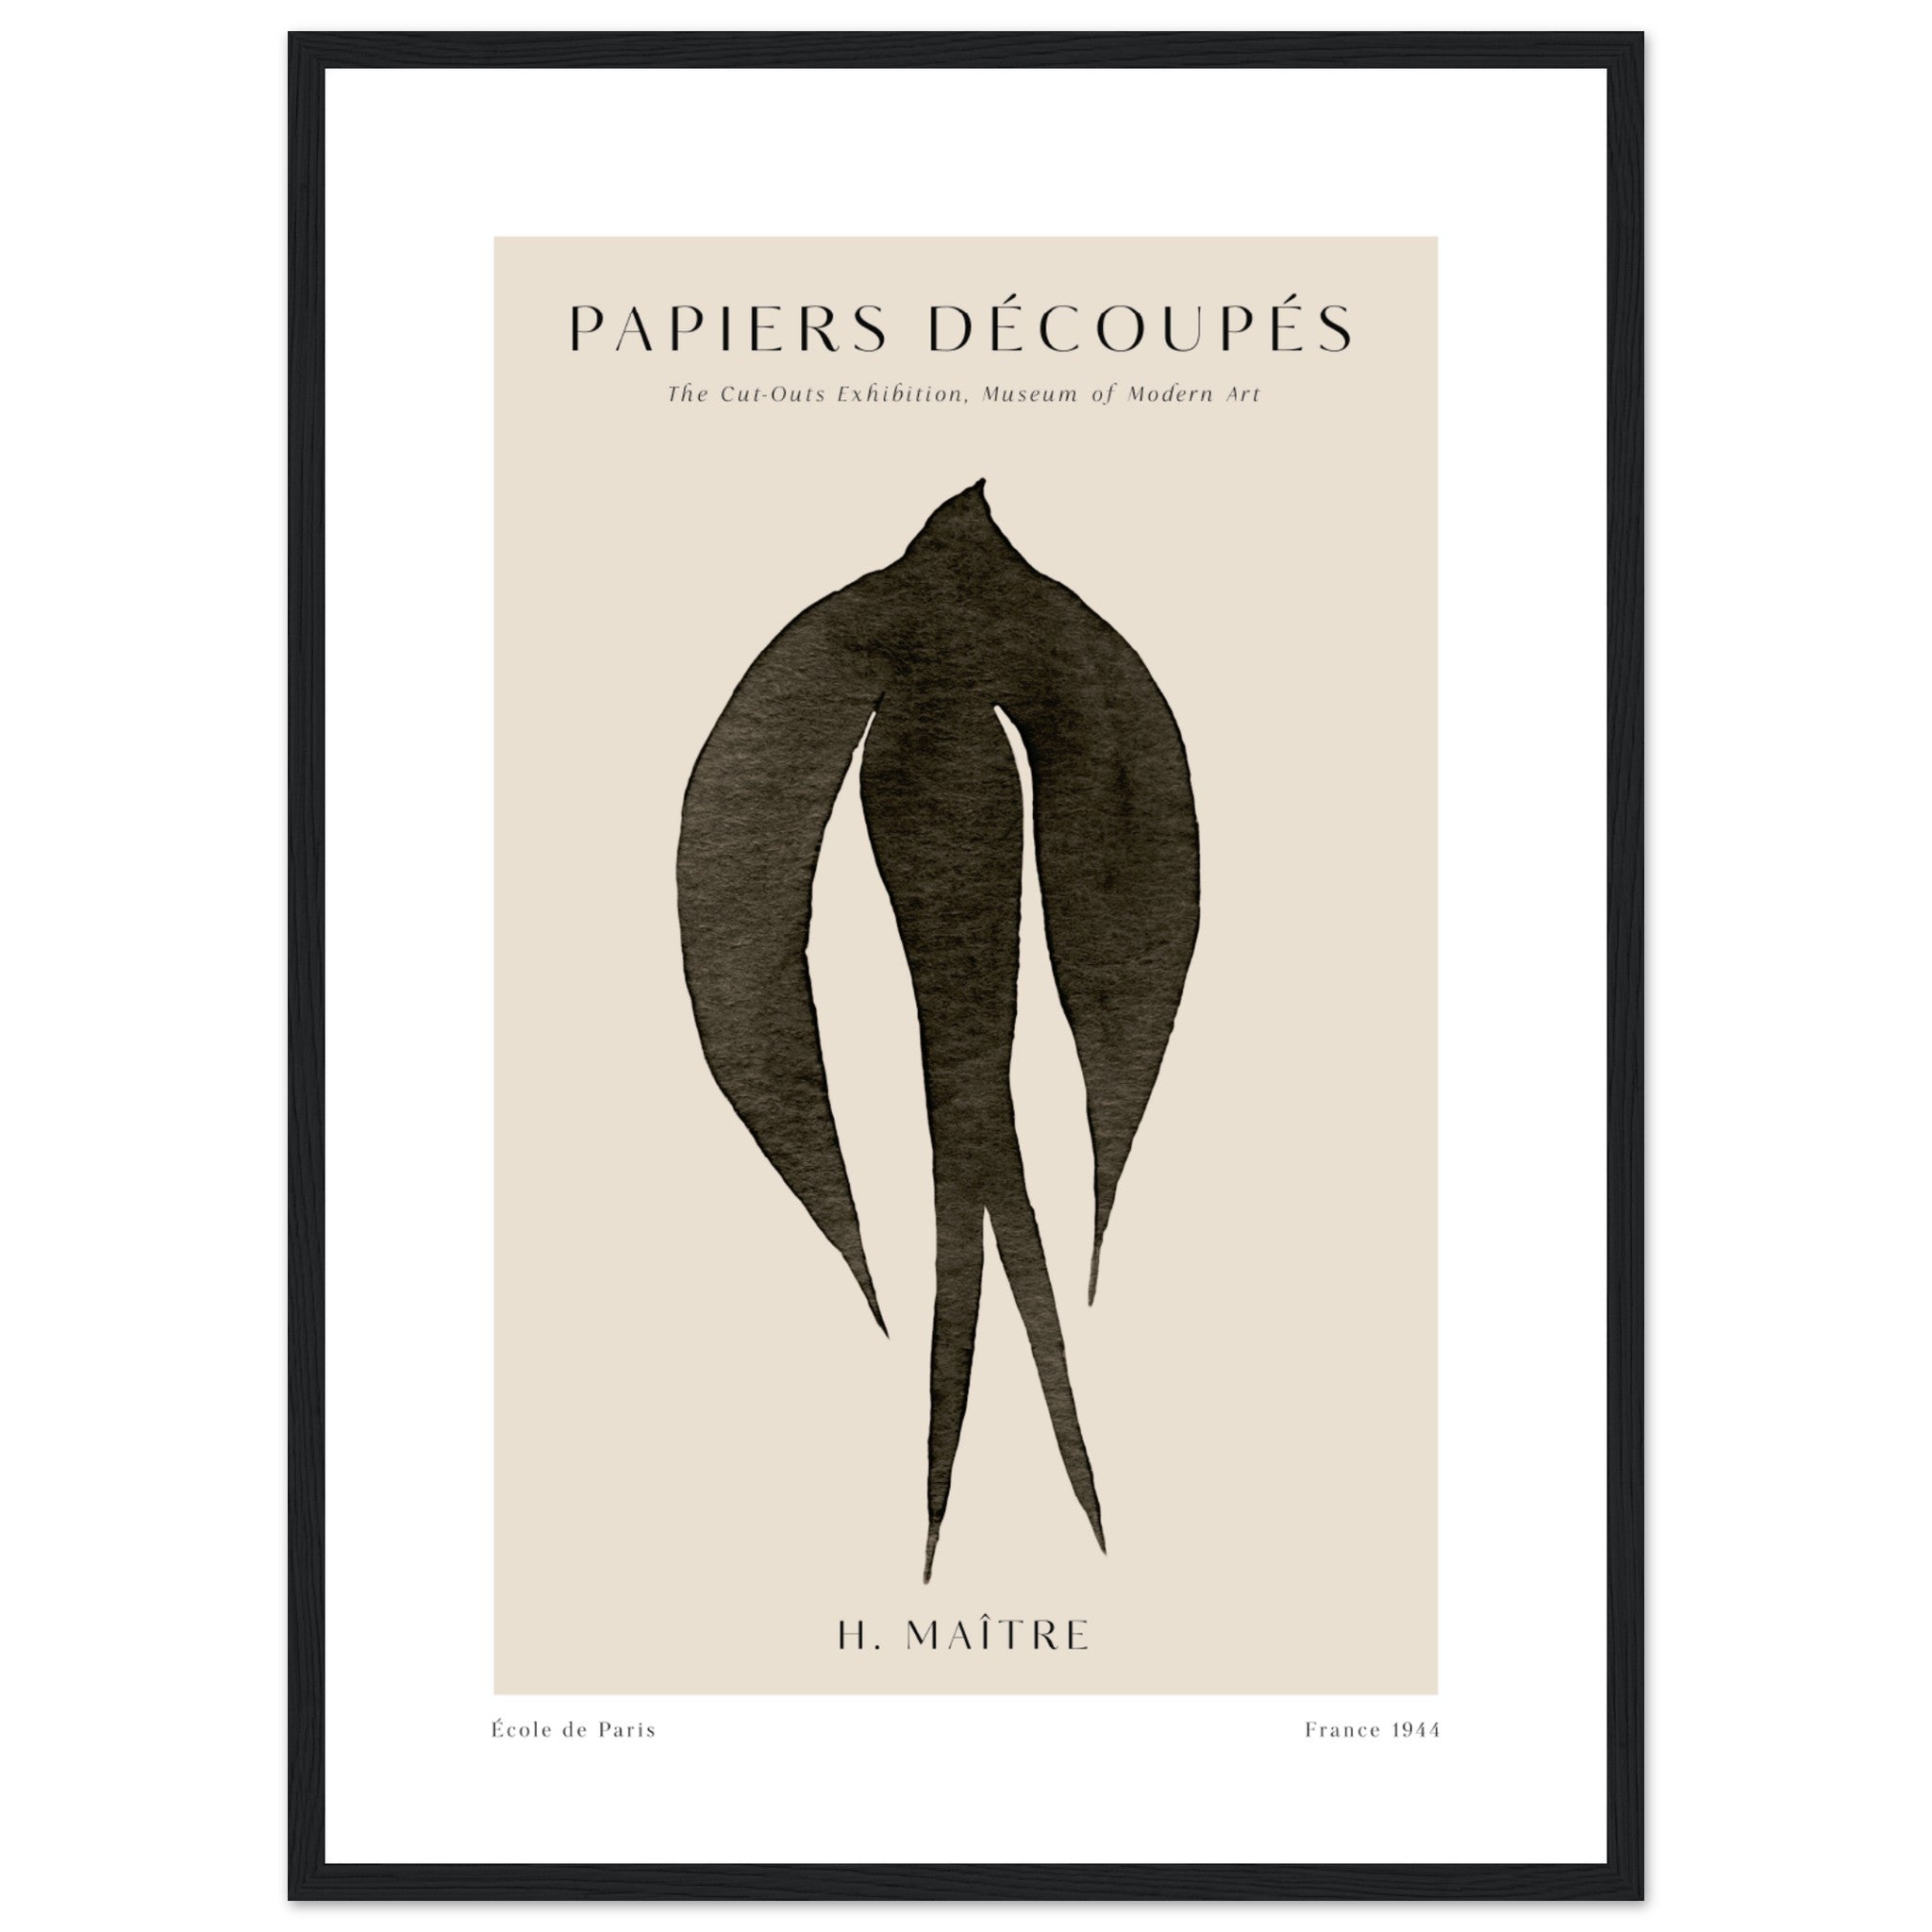 Matisse Papiers Decoupes No. 11 Poster